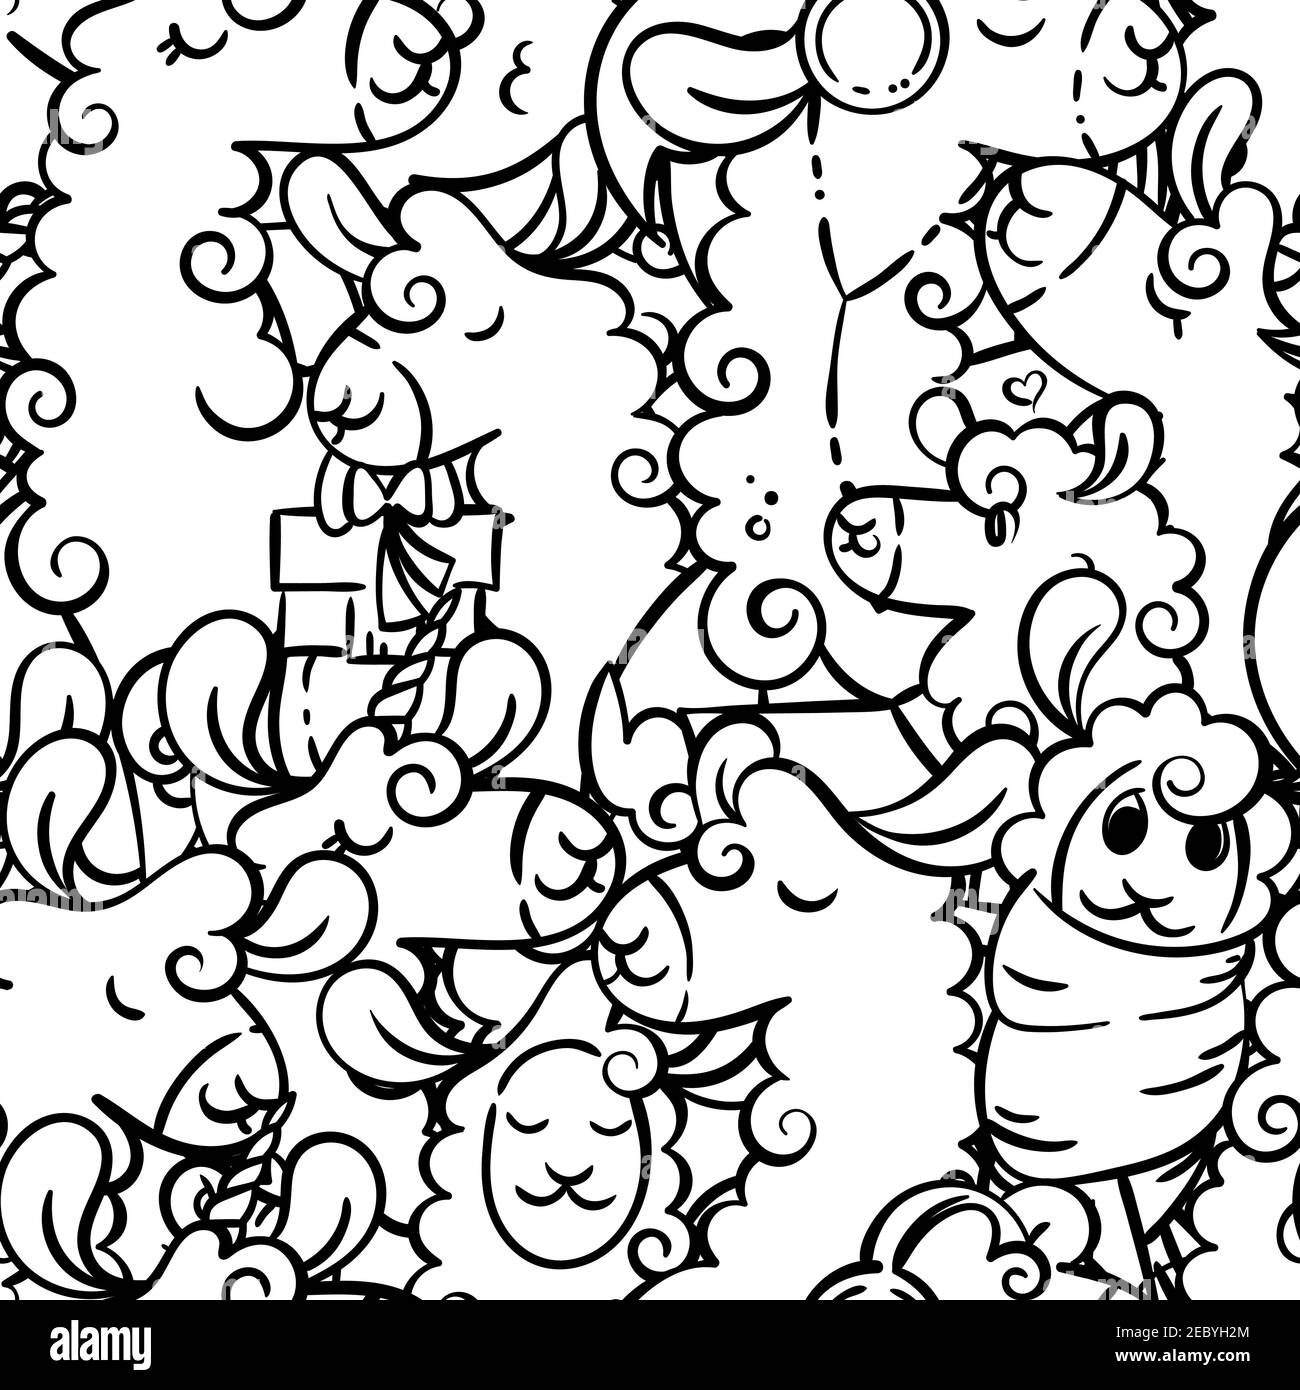 Motif sans coutures avec de jolis lamas et alpagas. Illustration vectorielle pour colorier des pages, des tirages pour enfants et adultes Illustration de Vecteur